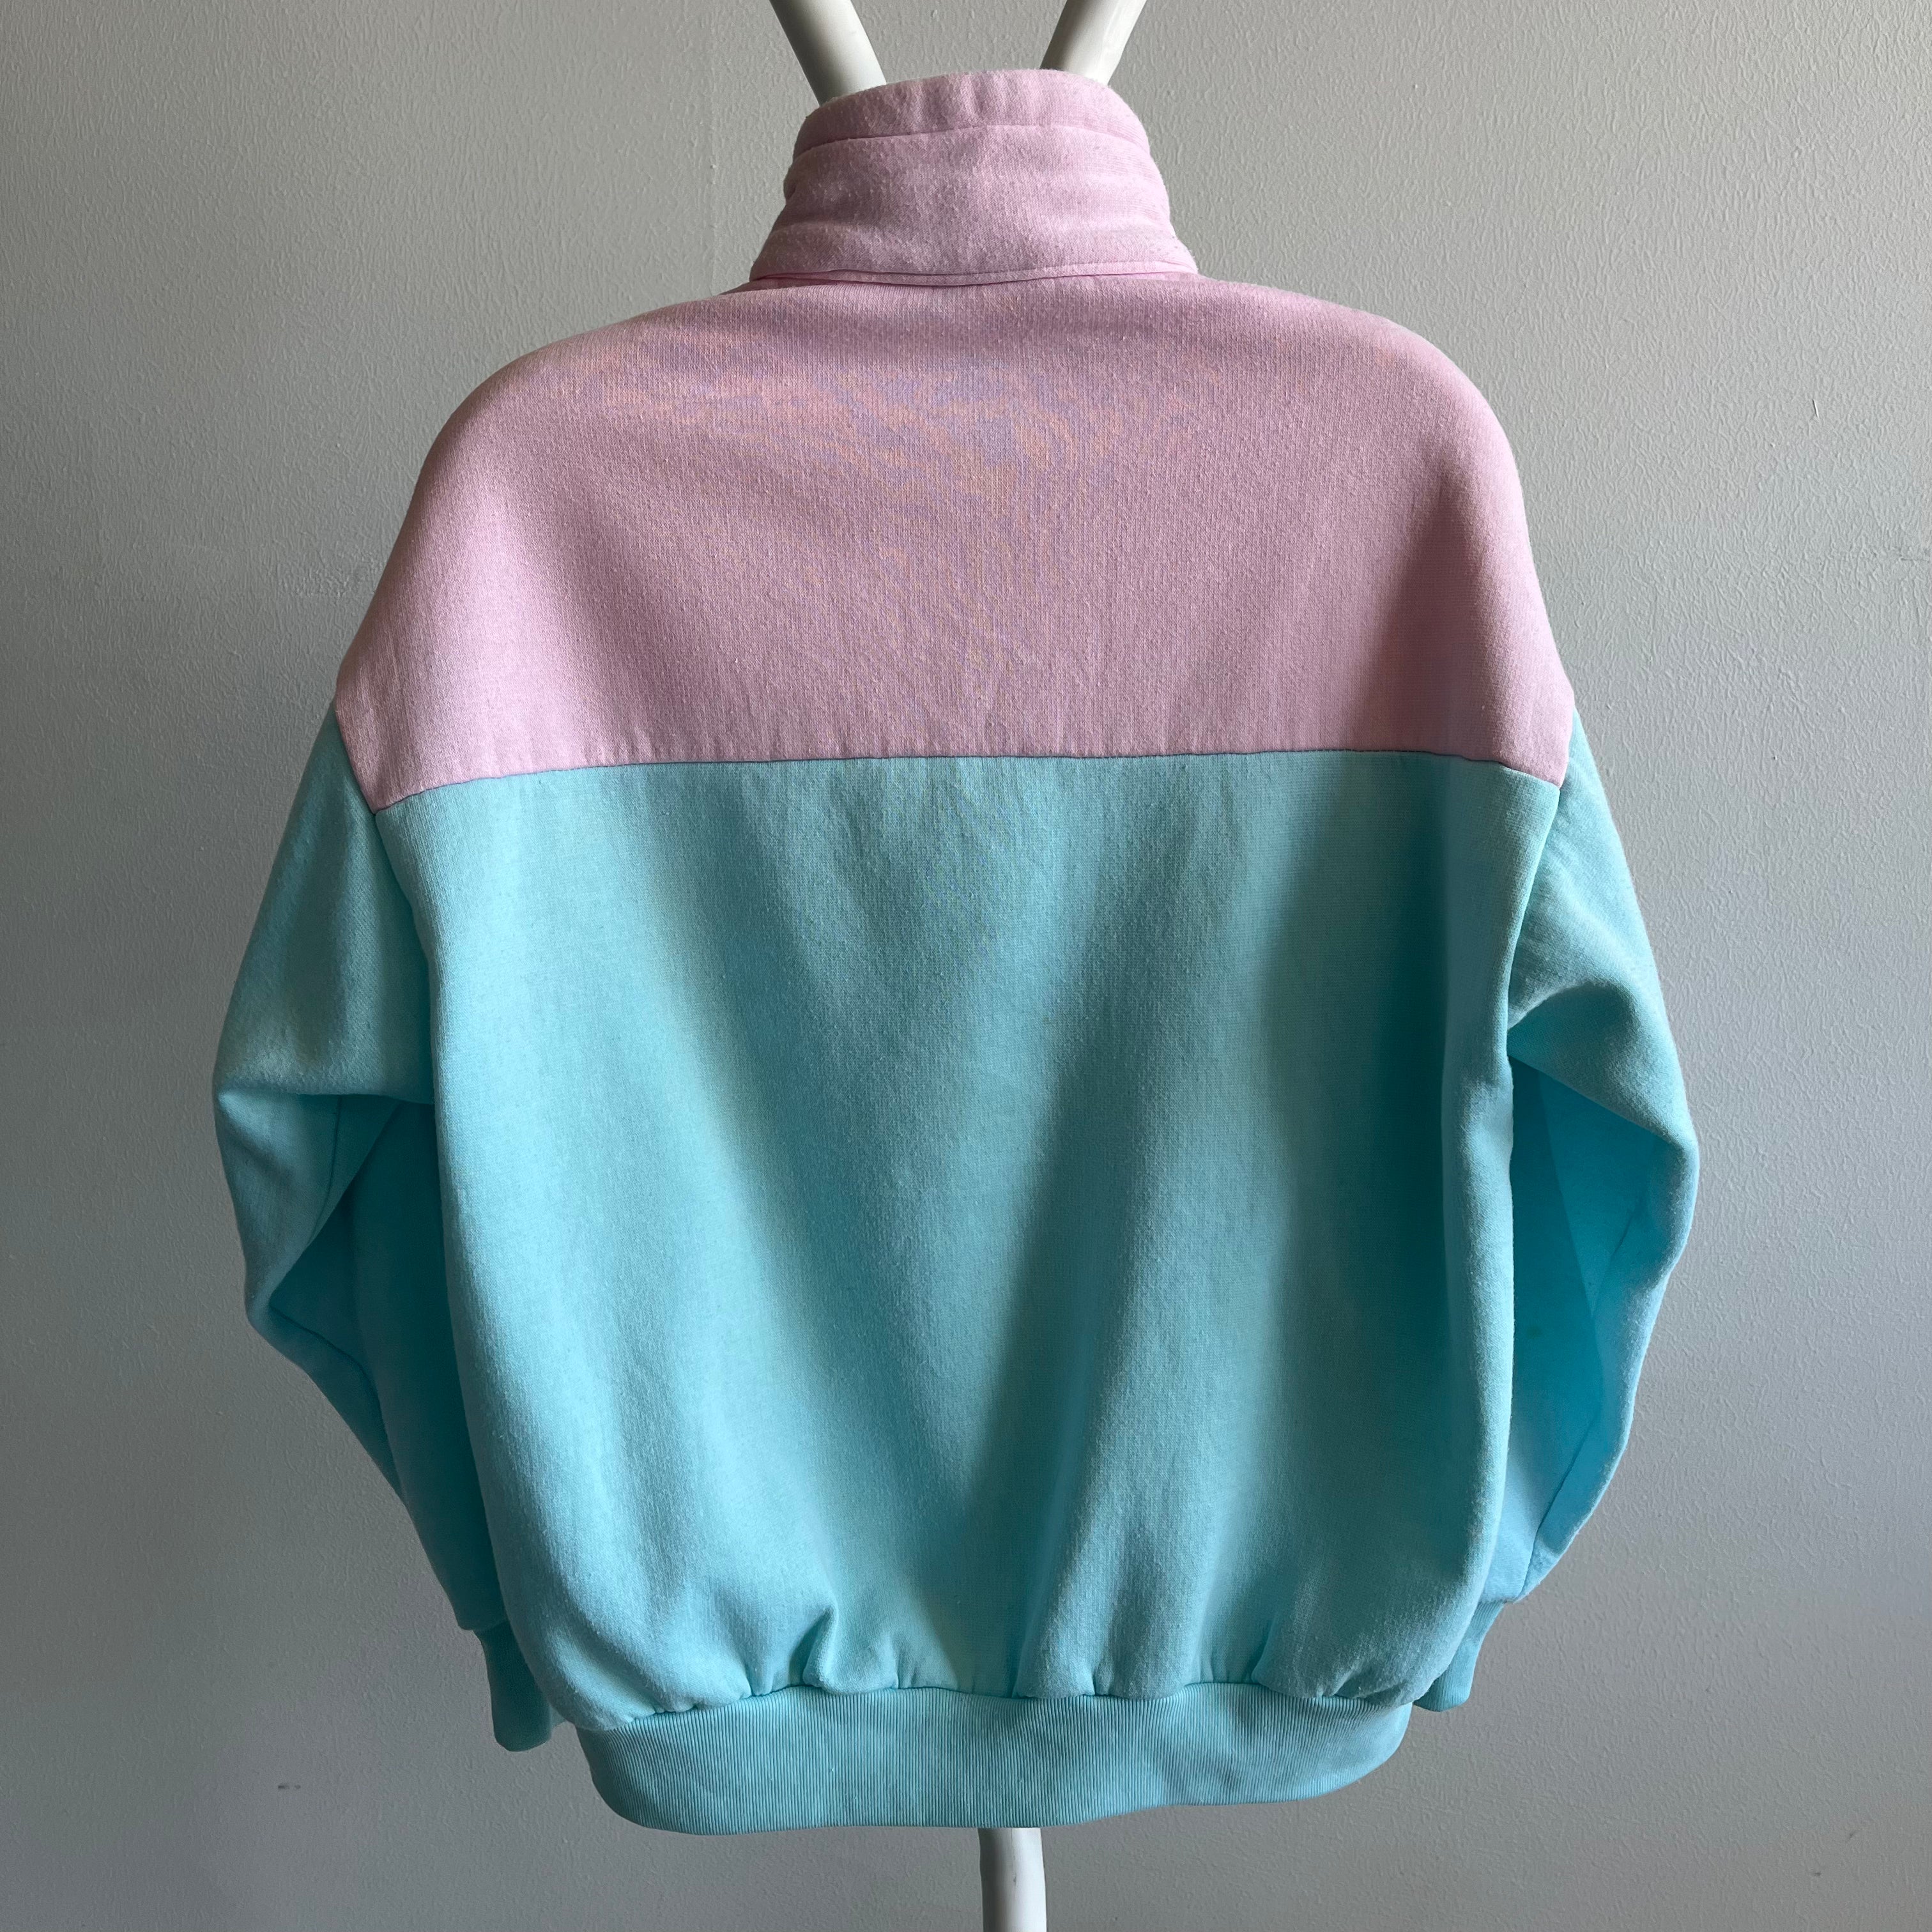 1980s San Francisco Colorblock 1/4 Zip Mock Neck Sweatshirt - Oh My!